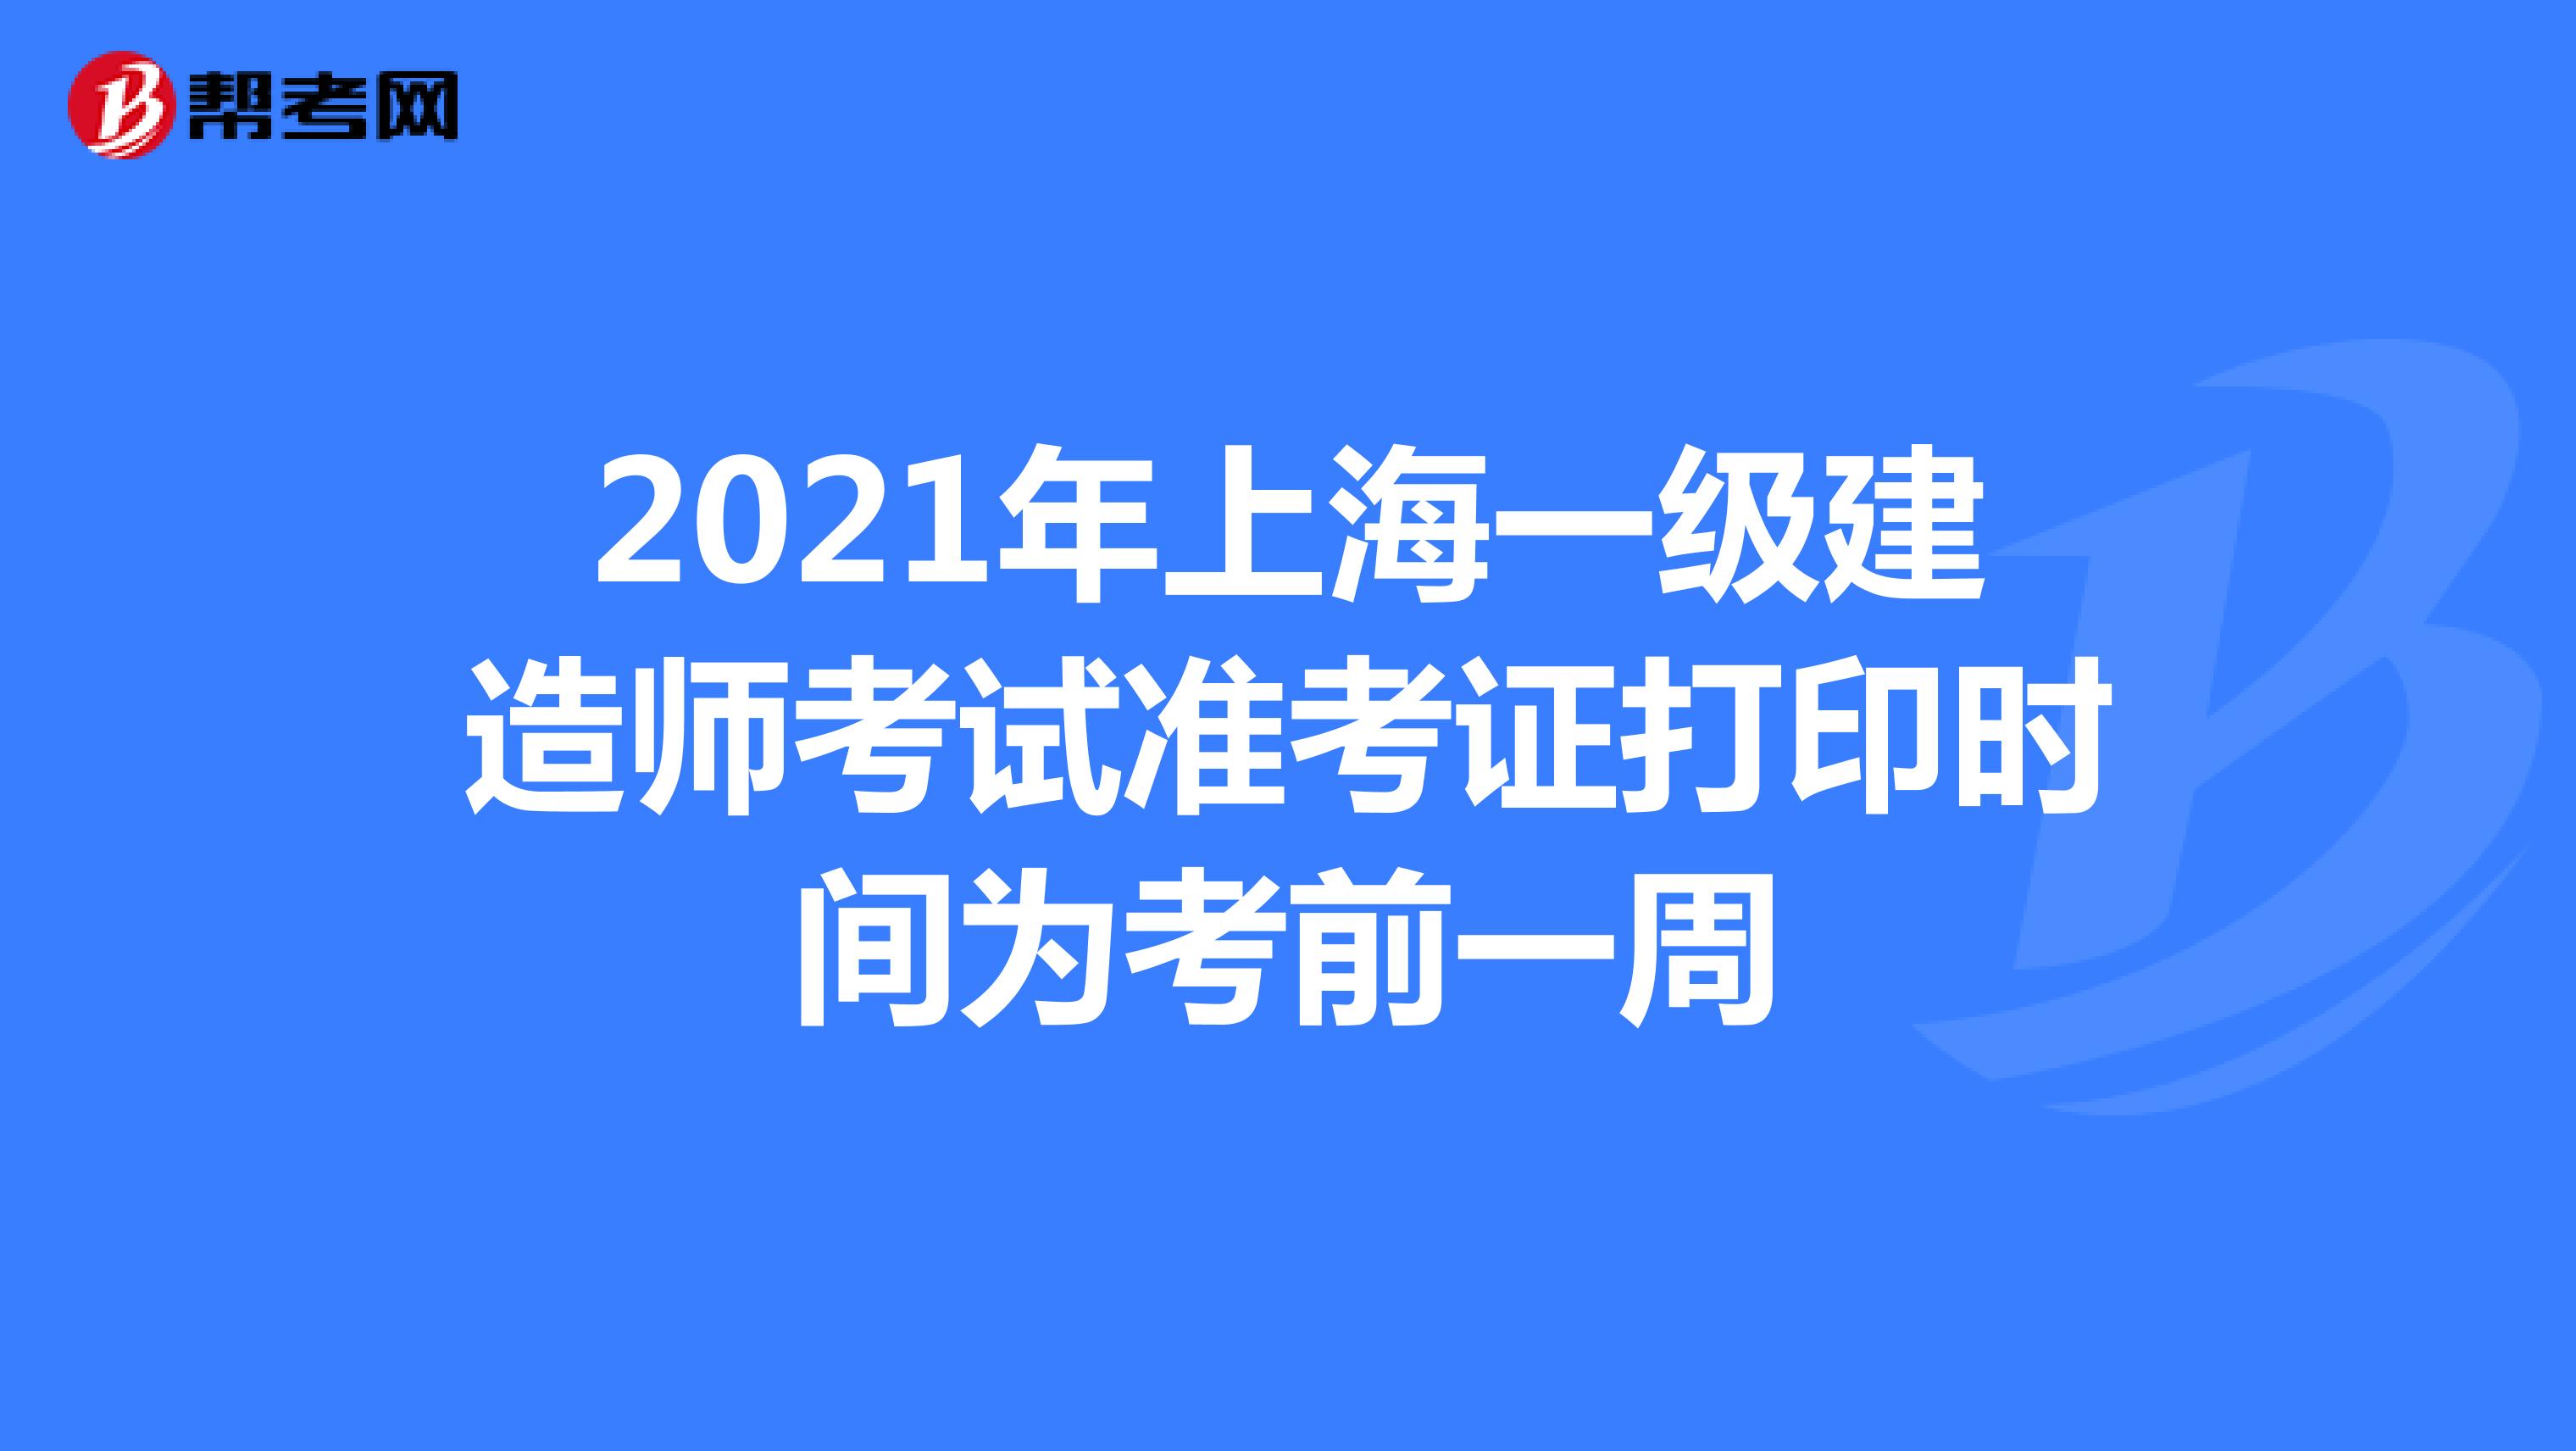 2021年上海一级建造师考试准考证打印时间为考前一周